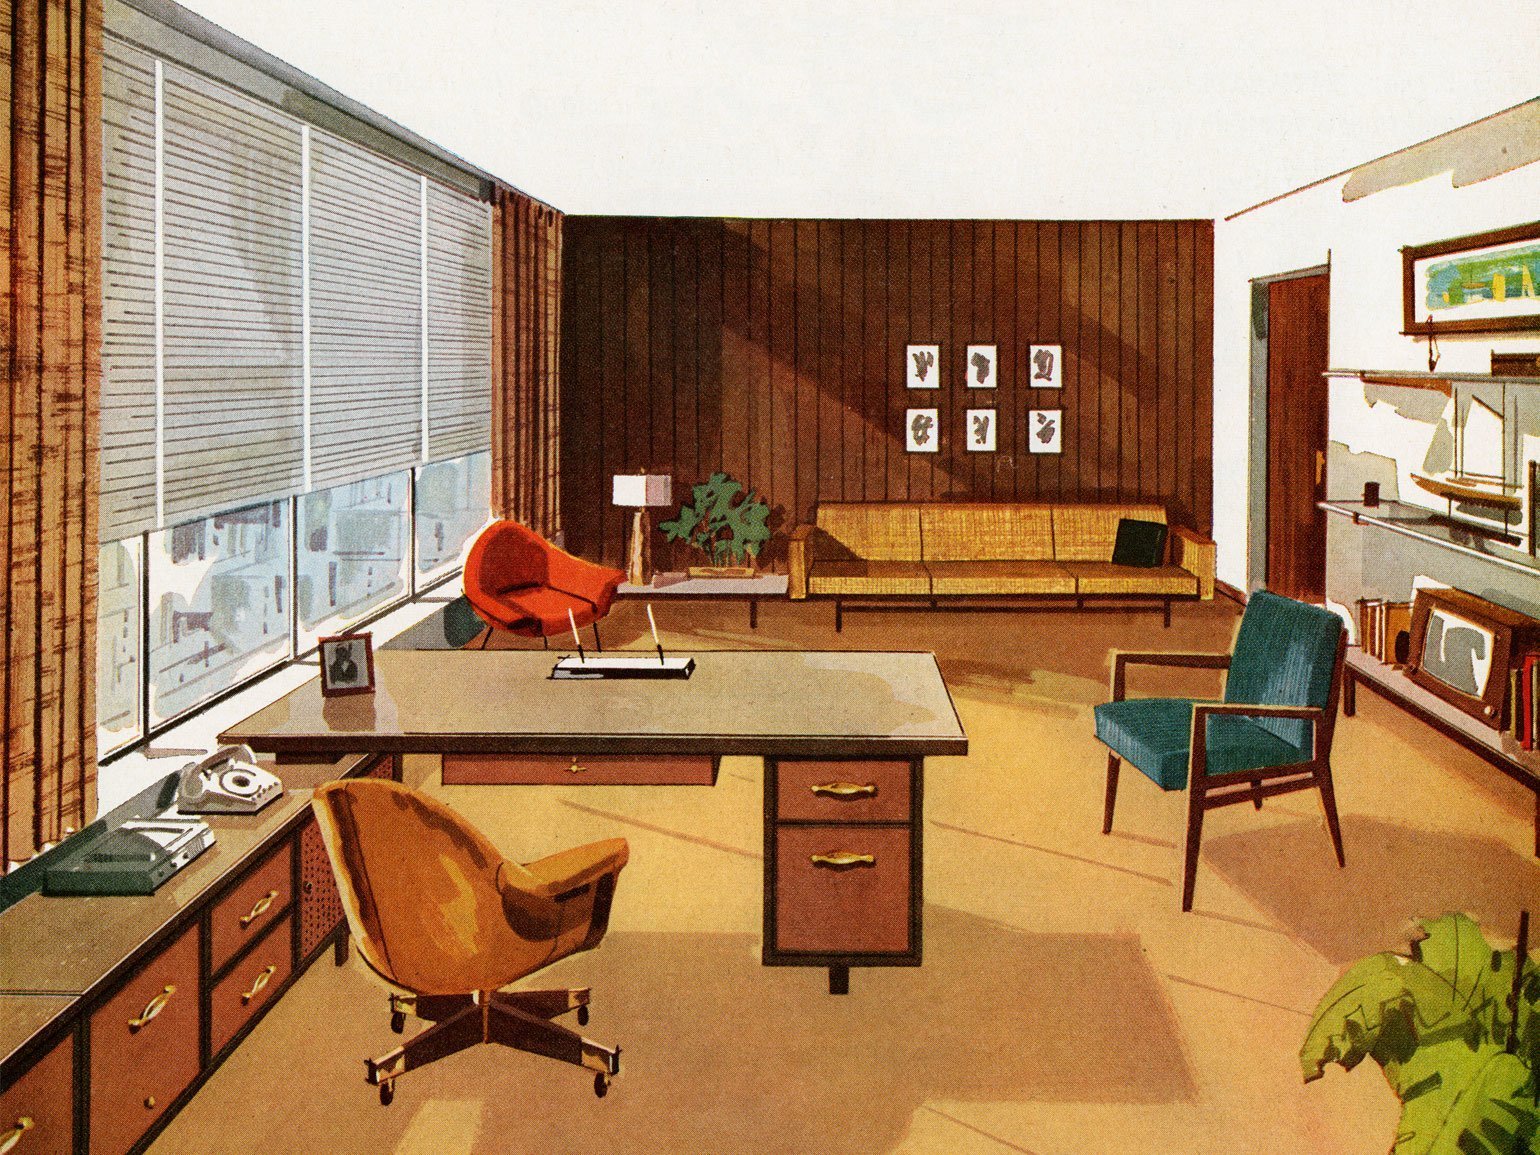  В офисе рабочий стол, кресло на колёсиках, мягкое кресло, диван, жалюзи и шторы в стиле шестидесятых